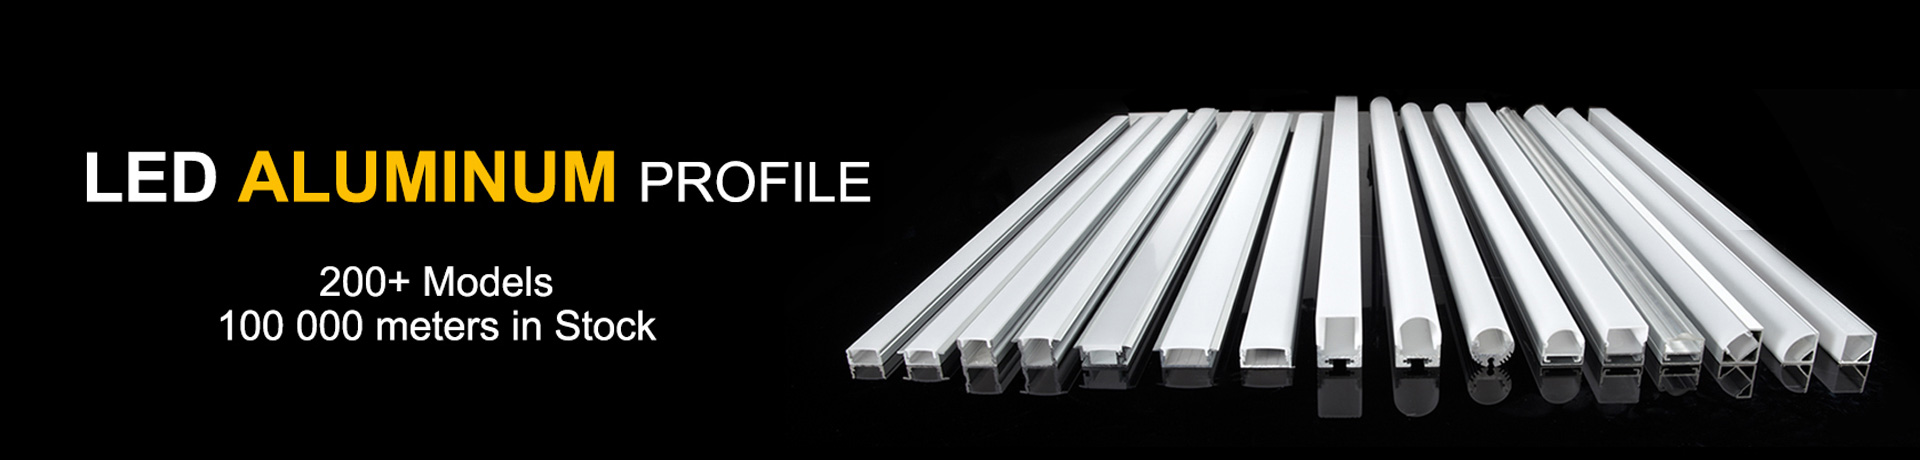 светодиодный алюминиевый профиль - Алюминиевый канал - Алюминиевый профиль для светодиодной ленты